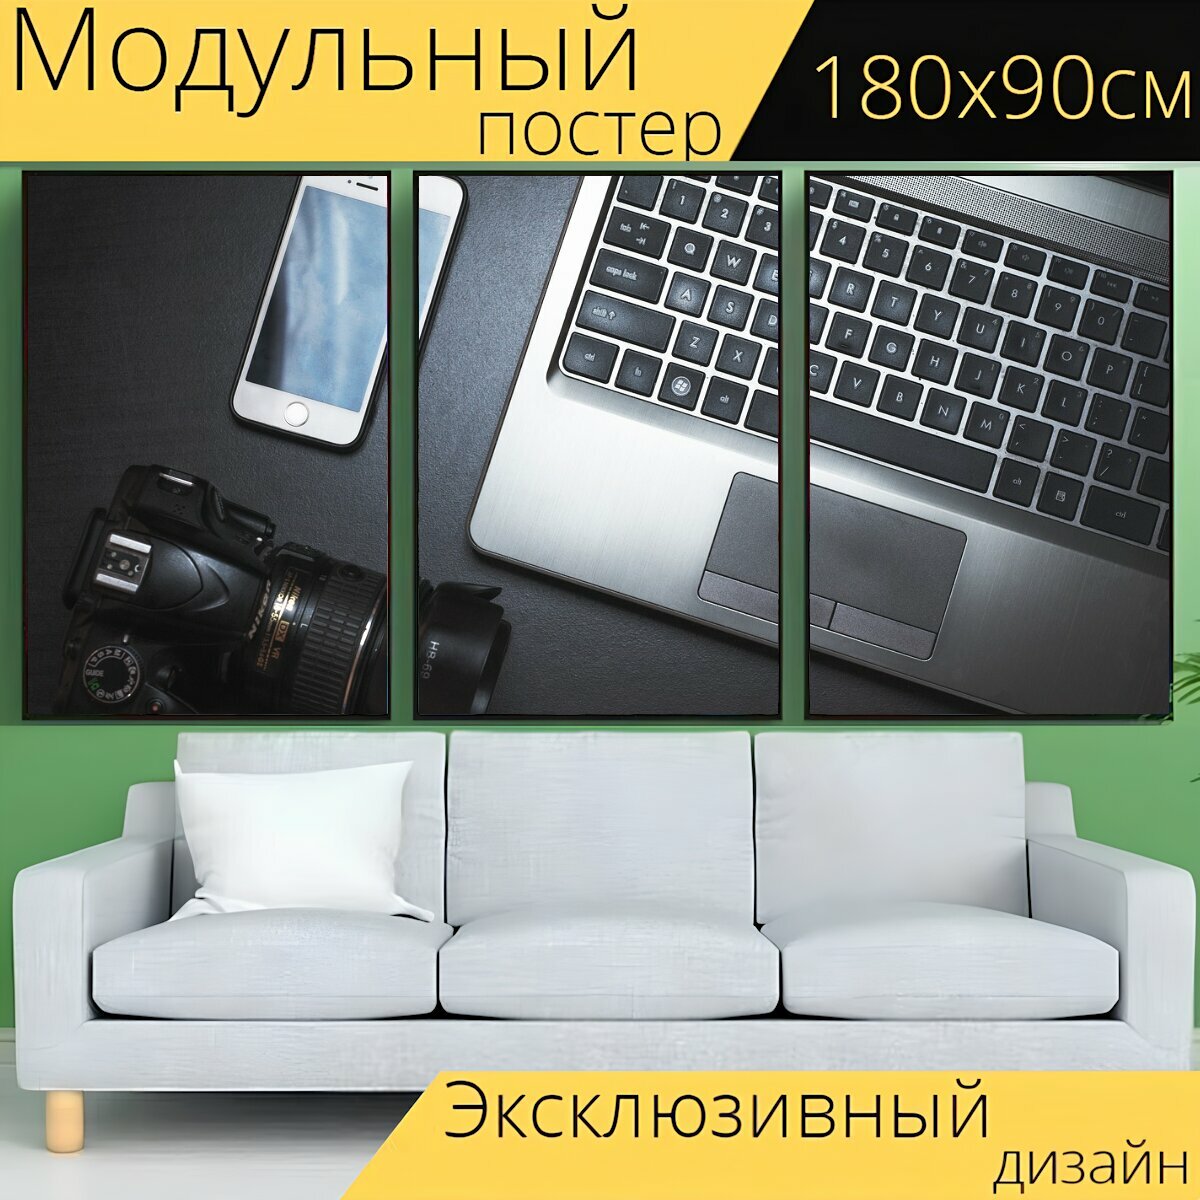 Модульный постер "Компьютер, ноутбук, клавиатура" 180 x 90 см. для интерьера